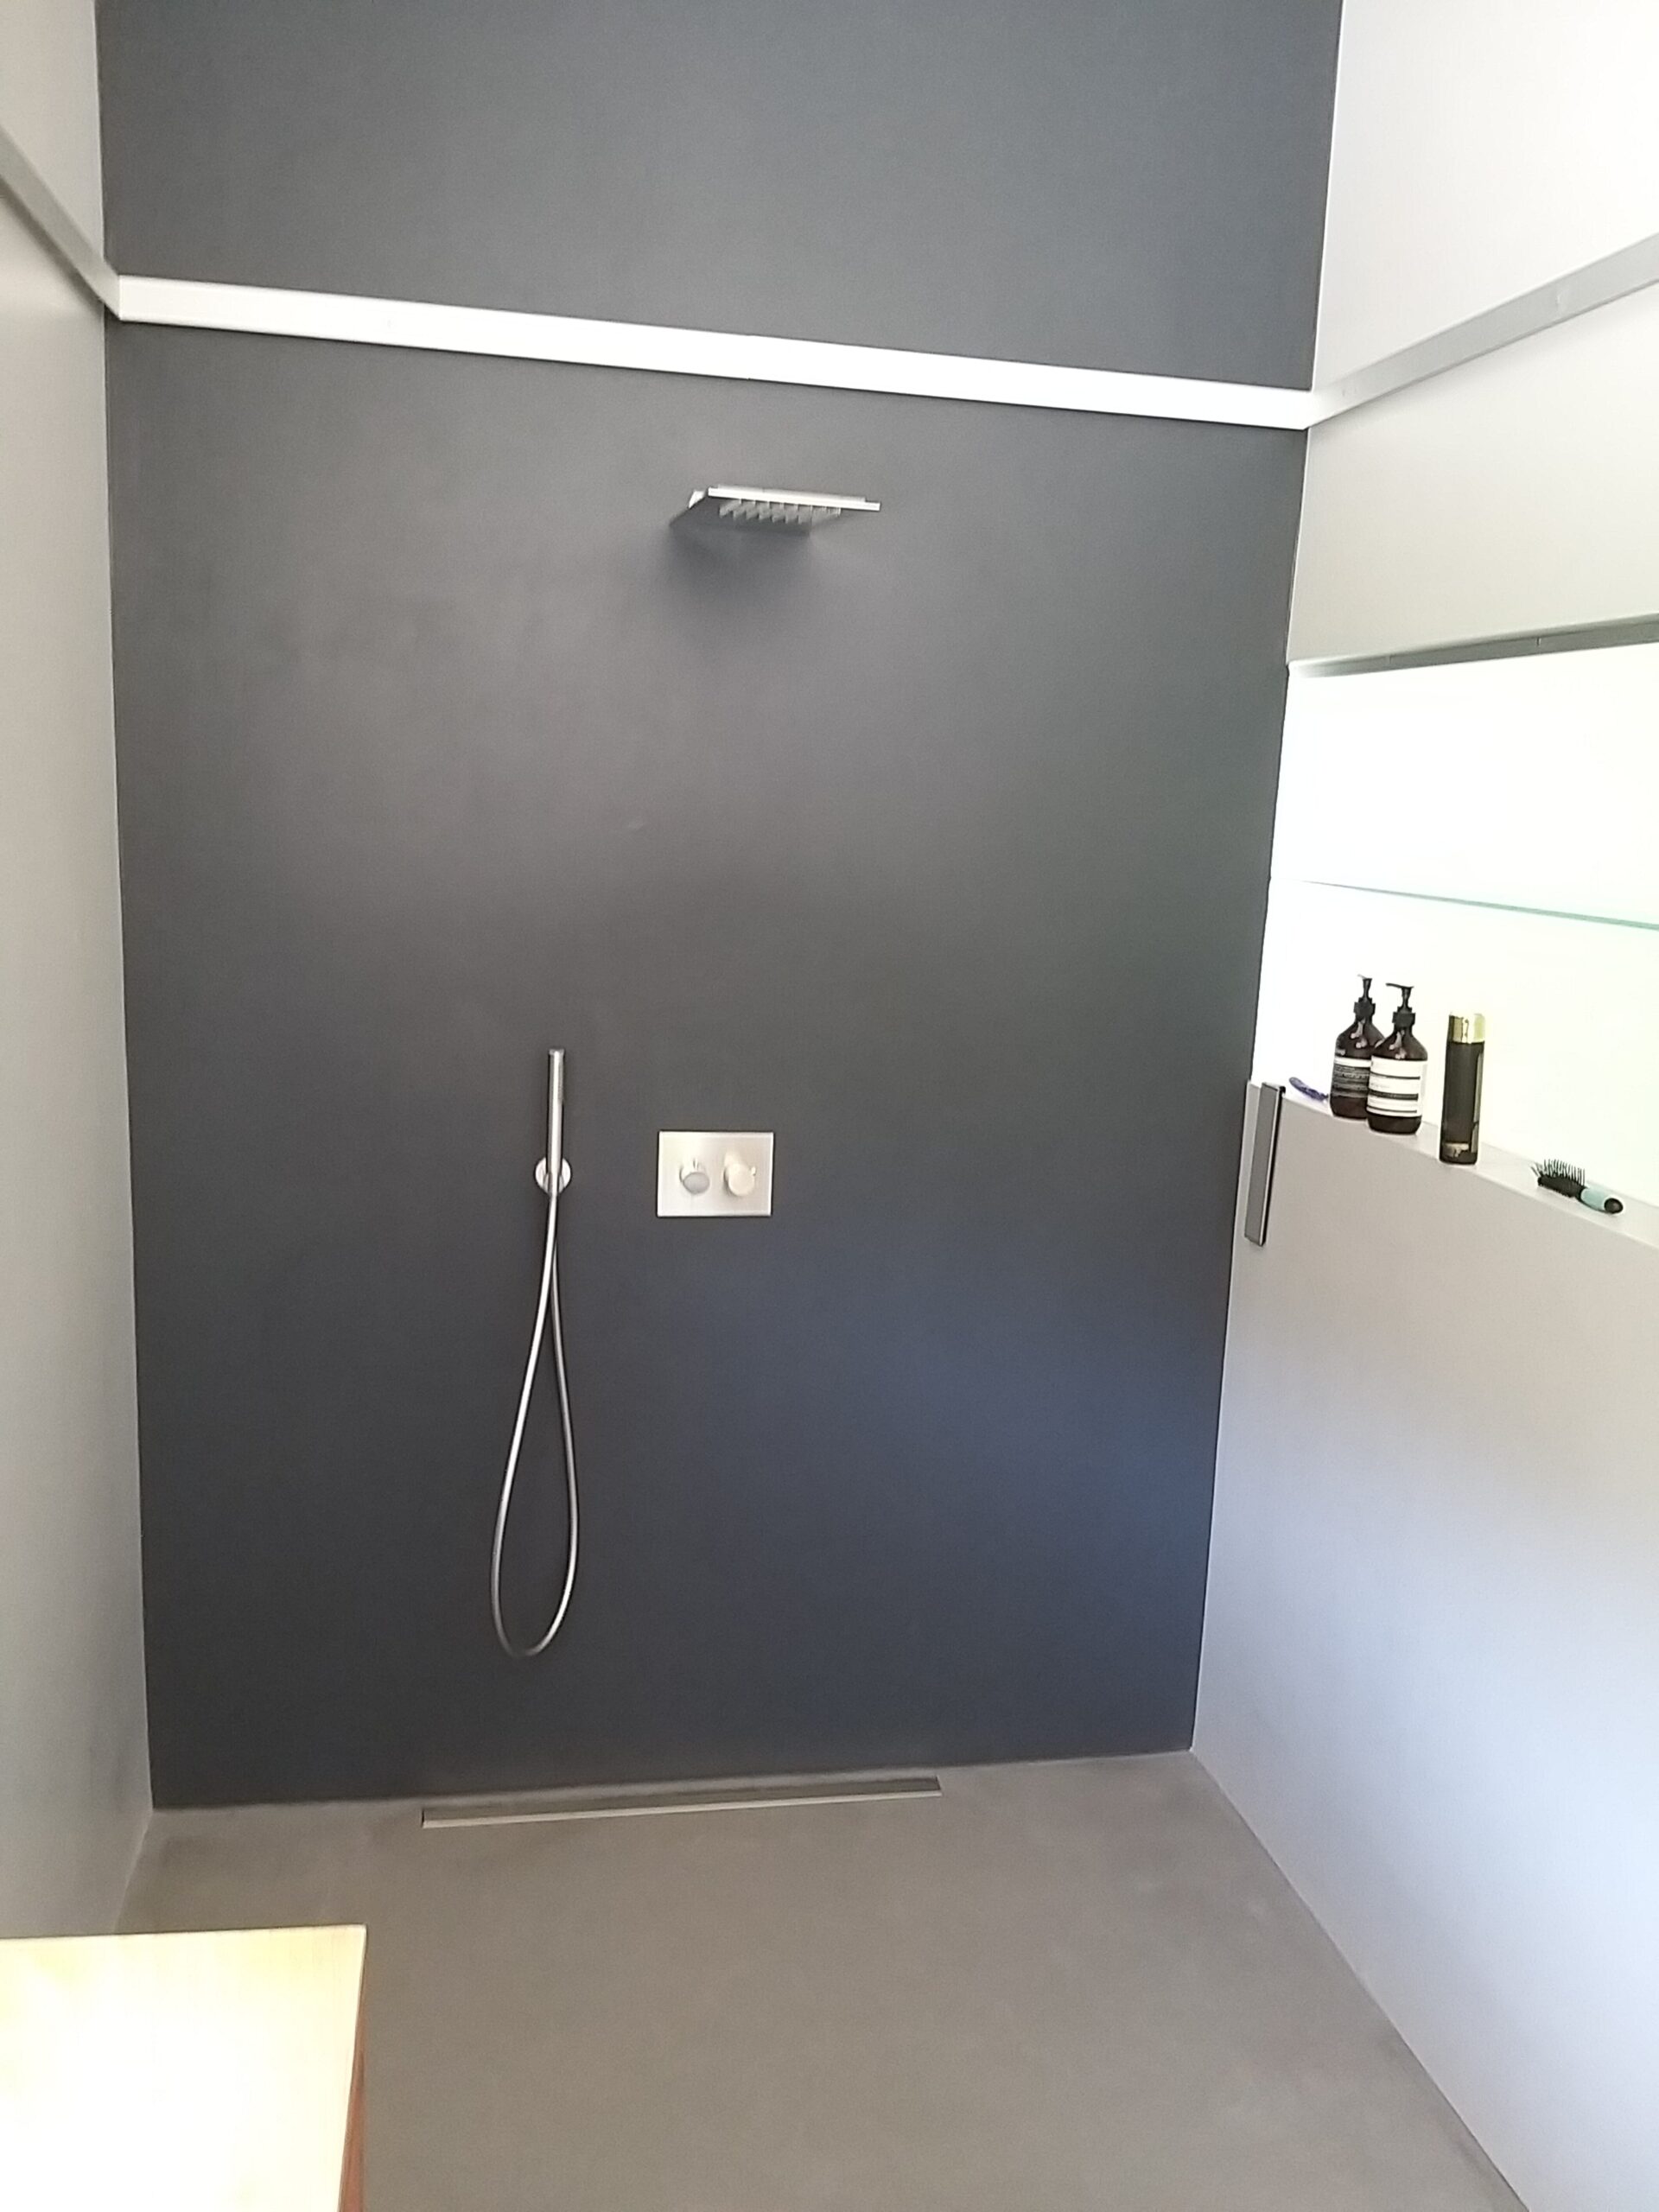 Badrenovierung und Installation einer modernen Dusche